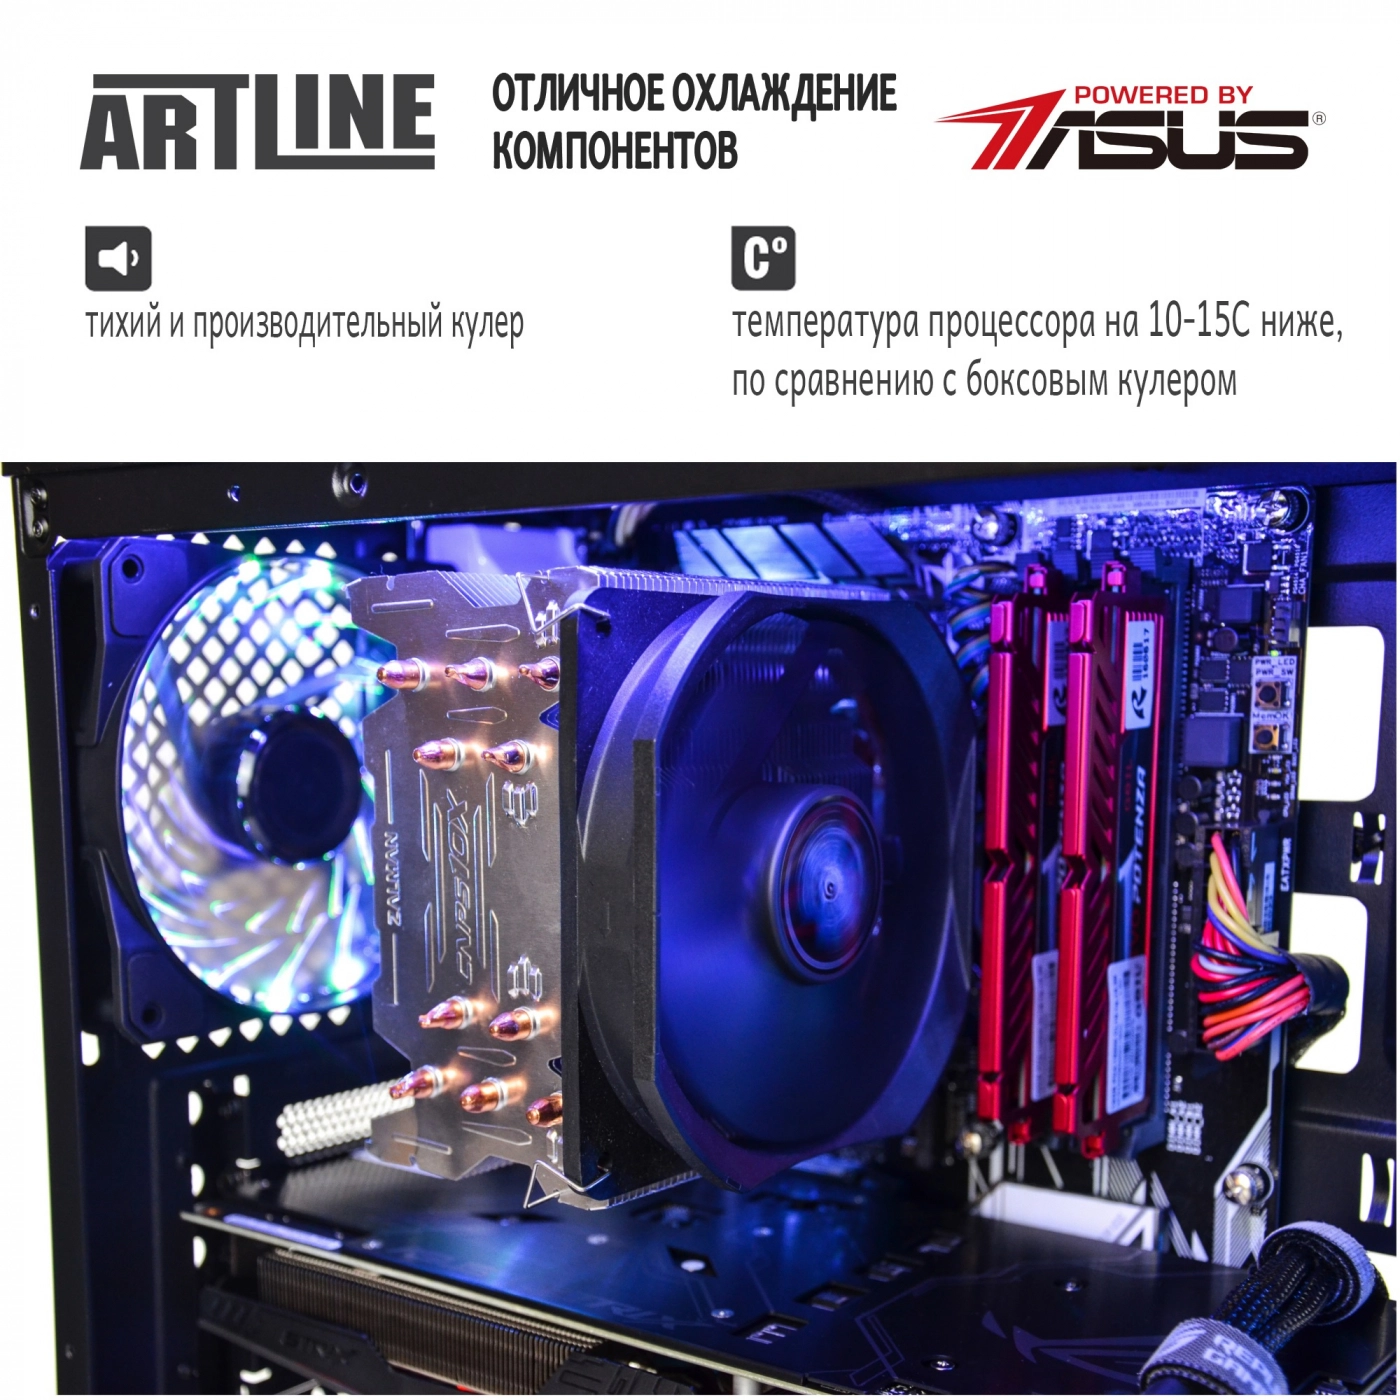 Купить Компьютер ARTLINE Gaming X98v07 - фото 4